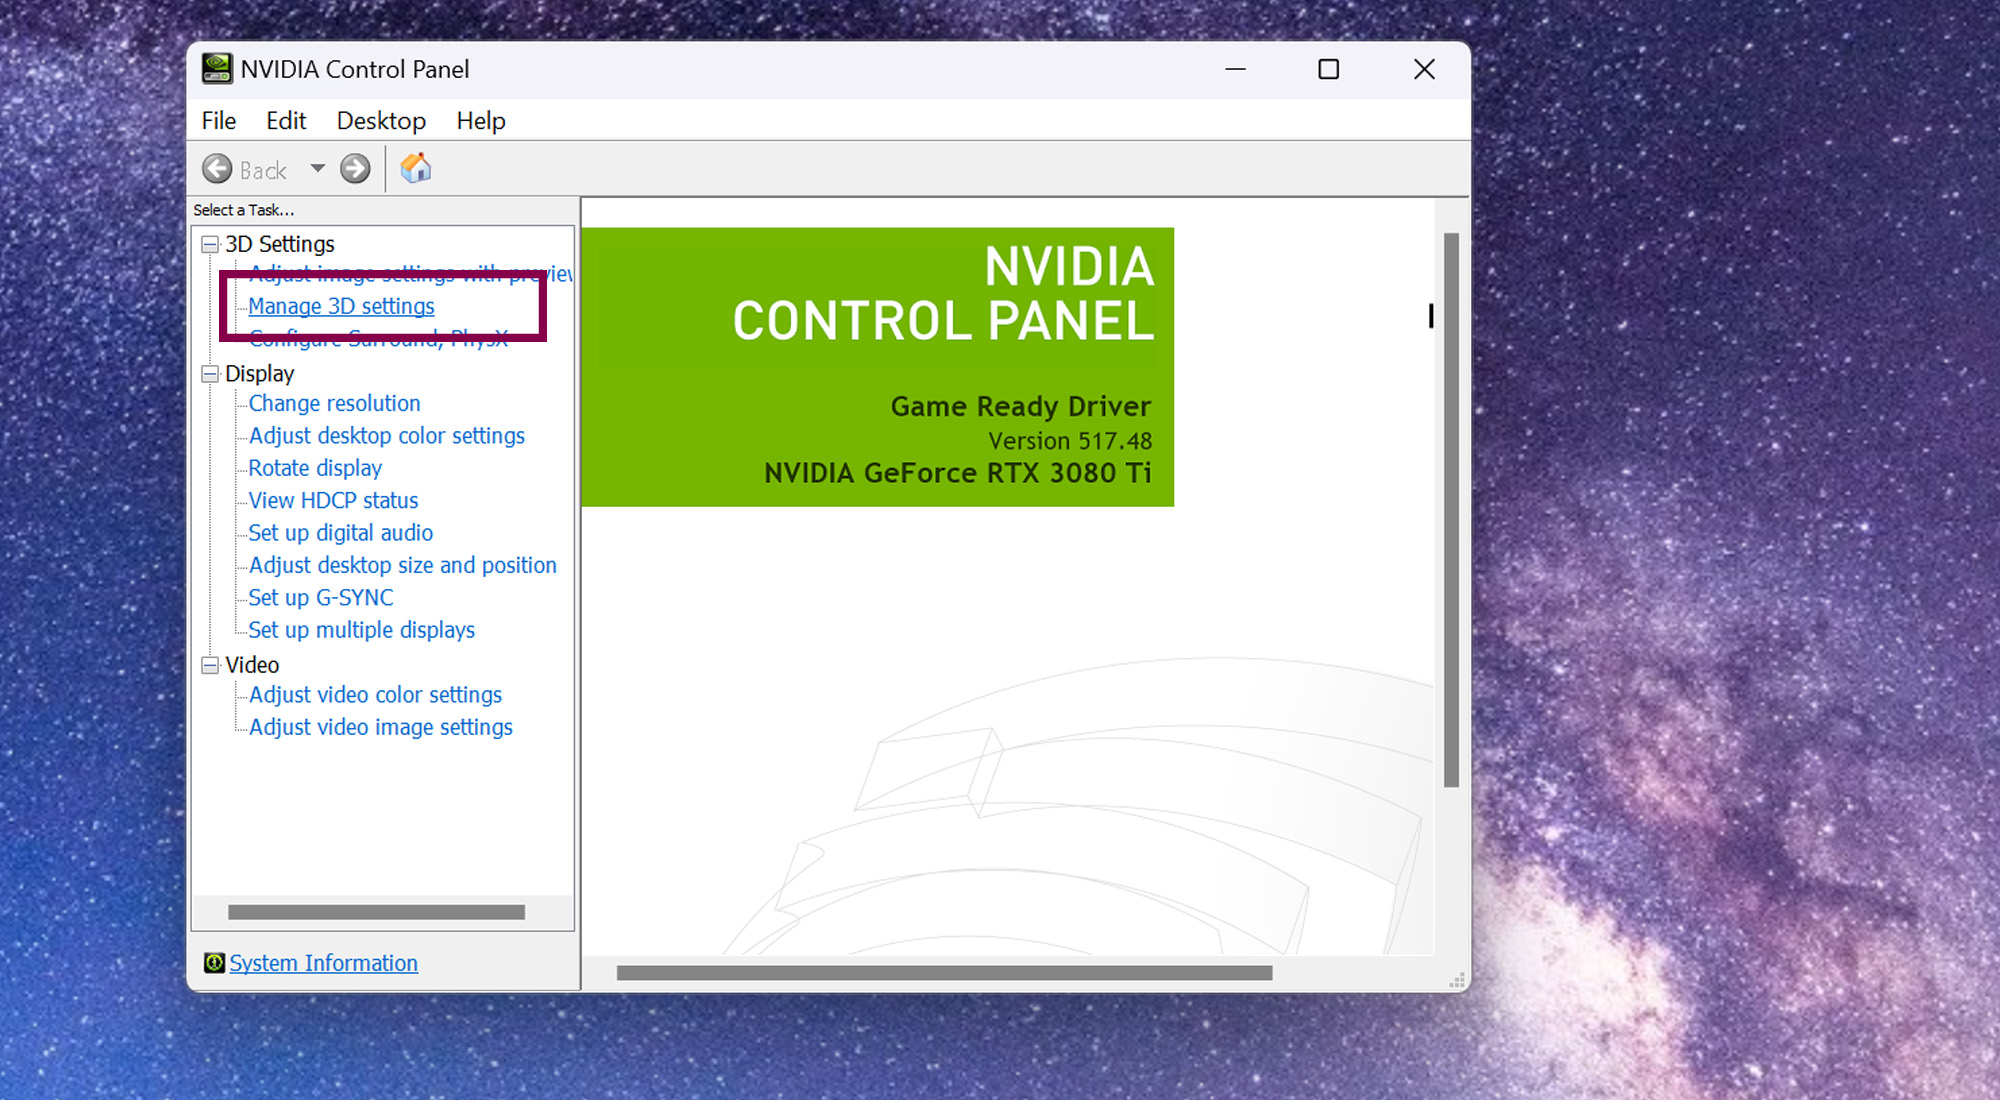 Снимок экрана с инструкциями по установке максимальной частоты кадров на графическом процессоре Nvidia.